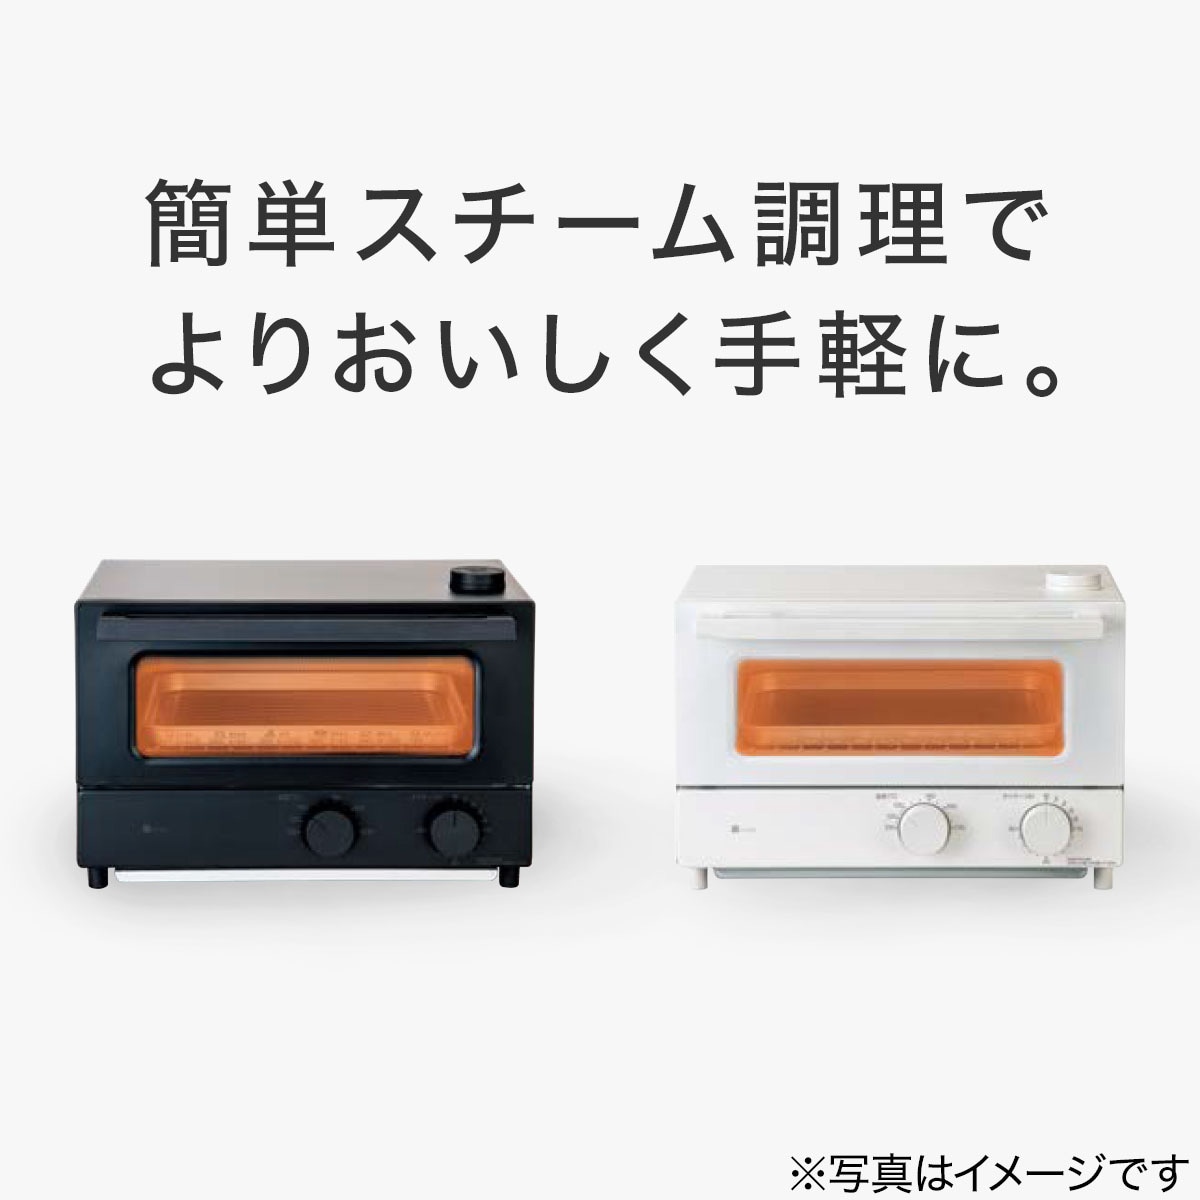 家電批評ベストバイ受賞】スチームオーブントースター(4枚焼き AC2S03 